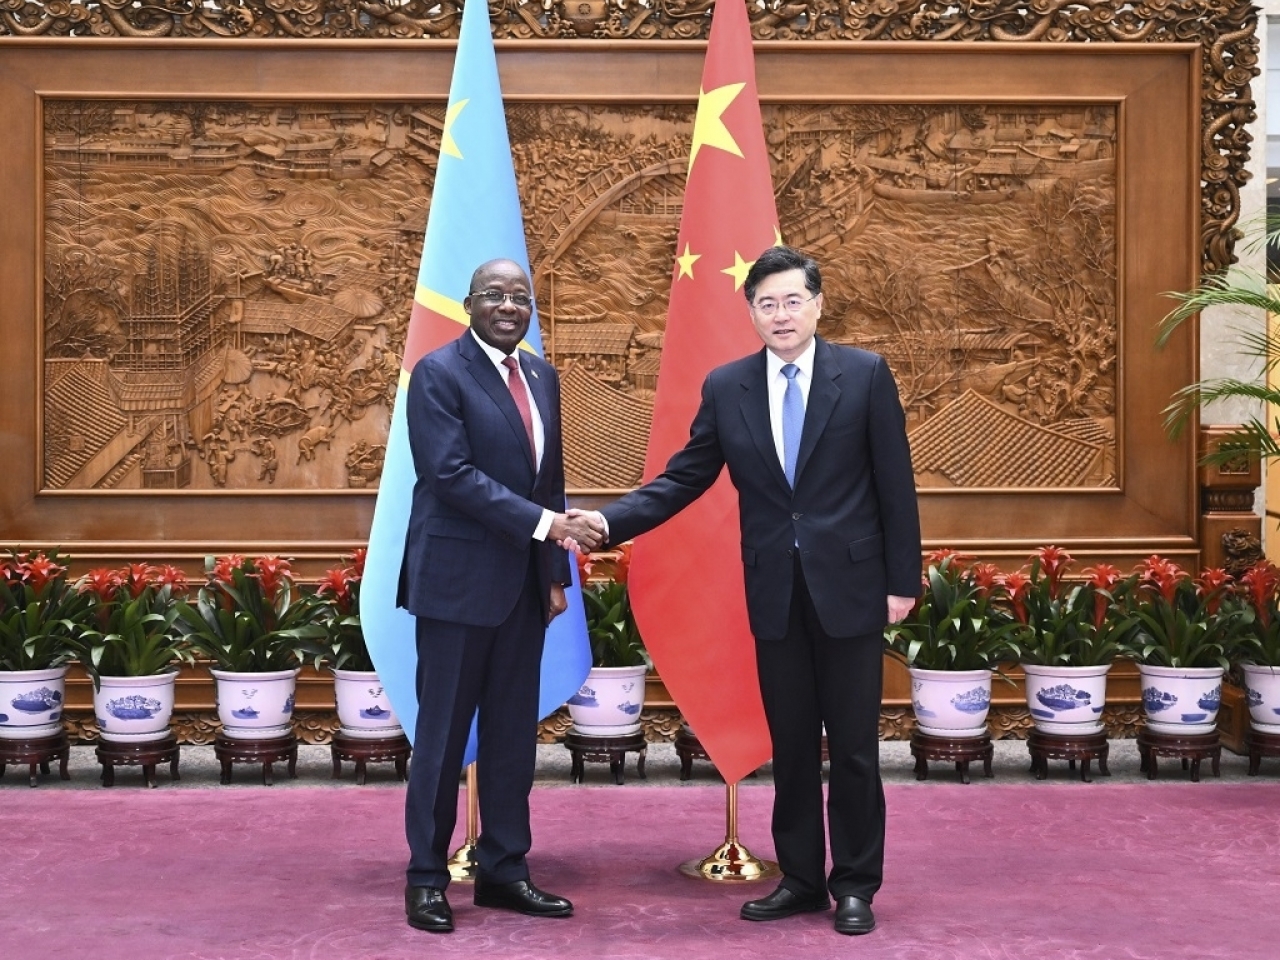 Coopération: Le vice-Premier ministre congolais Lutundula en Chine pour préparer la prochaine visite du Président Tshisekedi